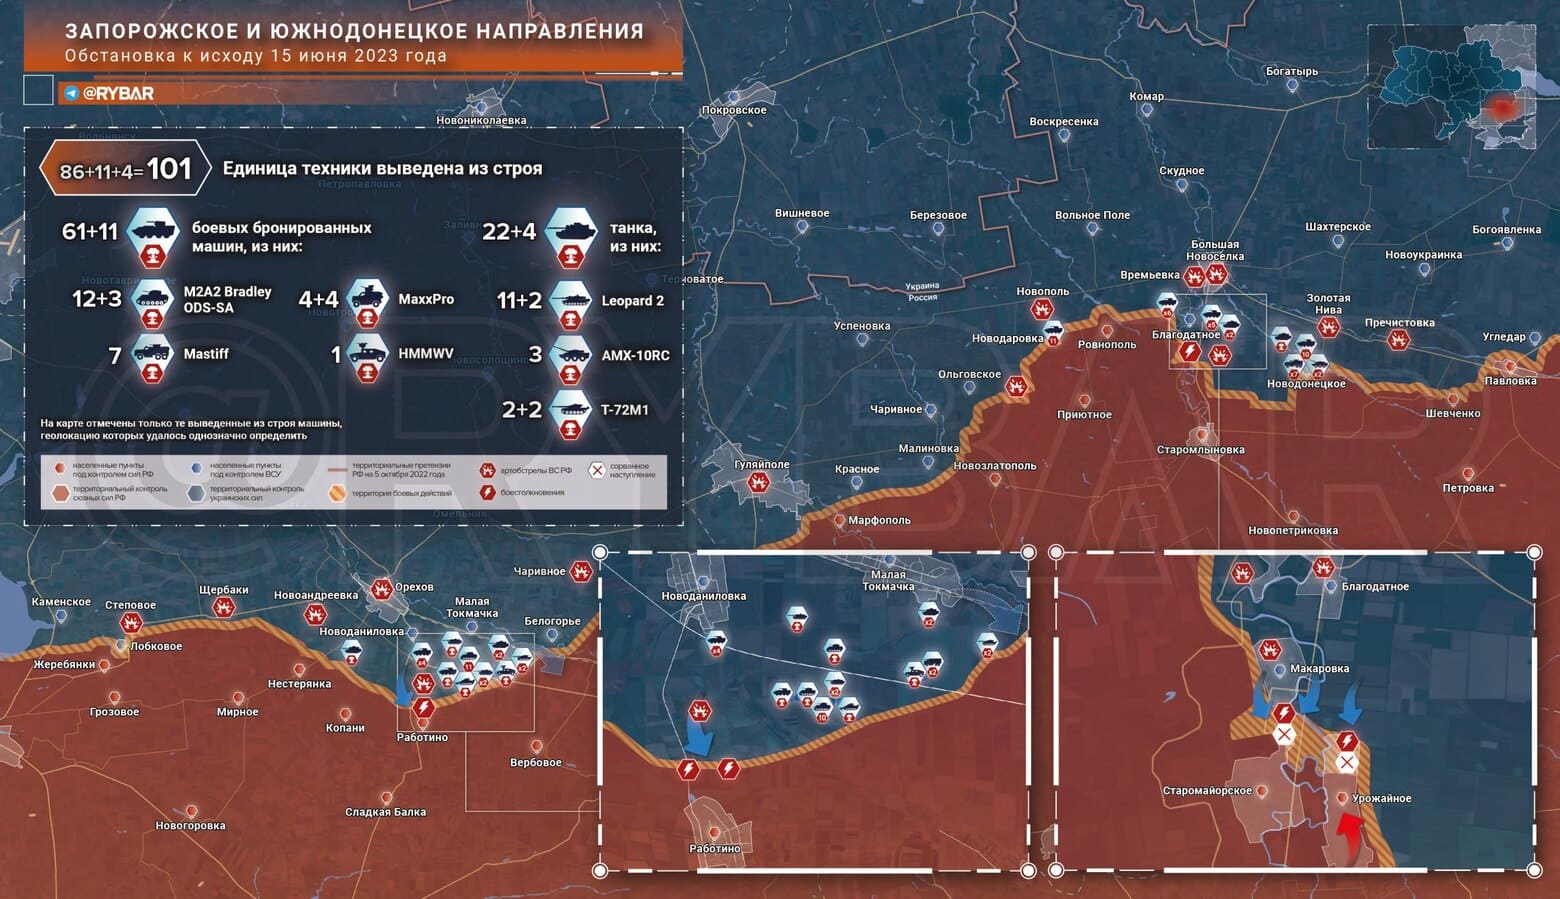 16 Haziran Cephe Haritası: Ukrayna’nın Zaporojye yönünden saldırısı sürüyor